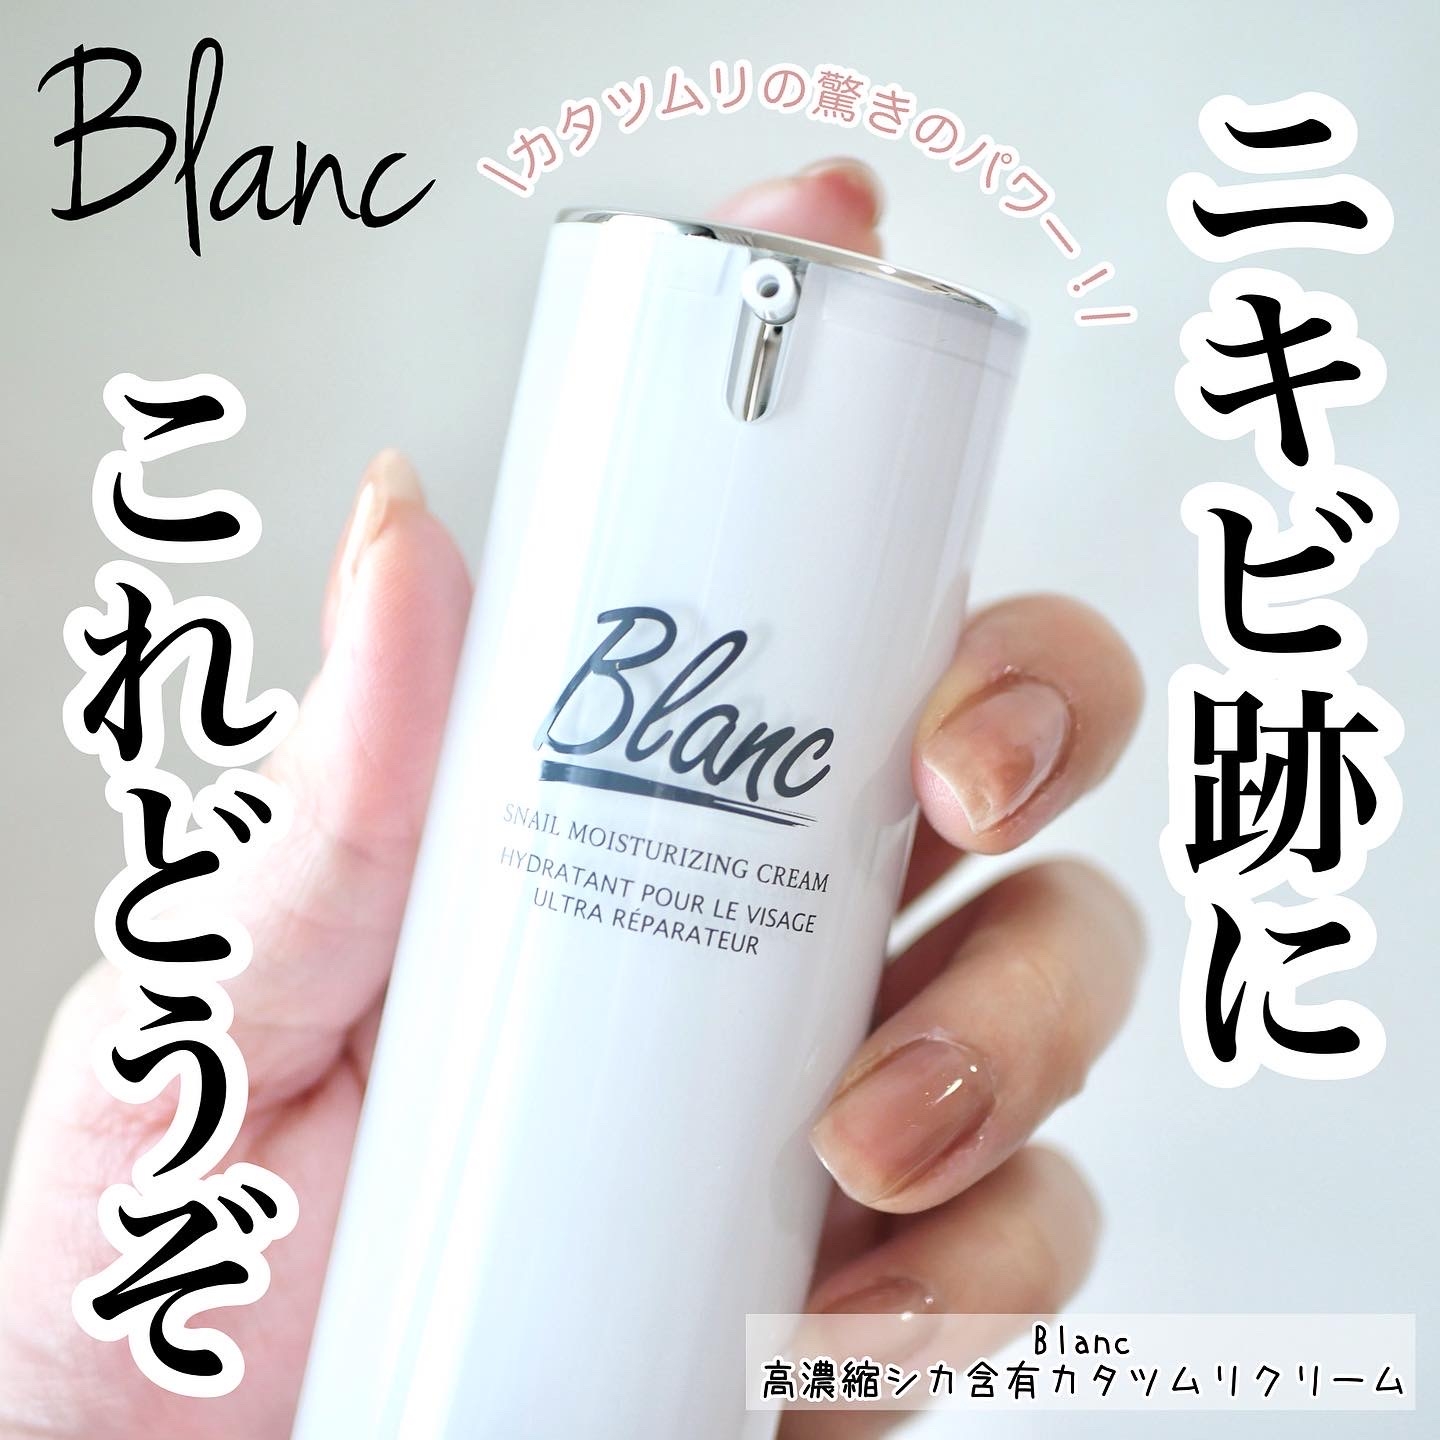 ブランの口コミ - Blanc 高濃縮シカ含有カタツムリクリーム by ...